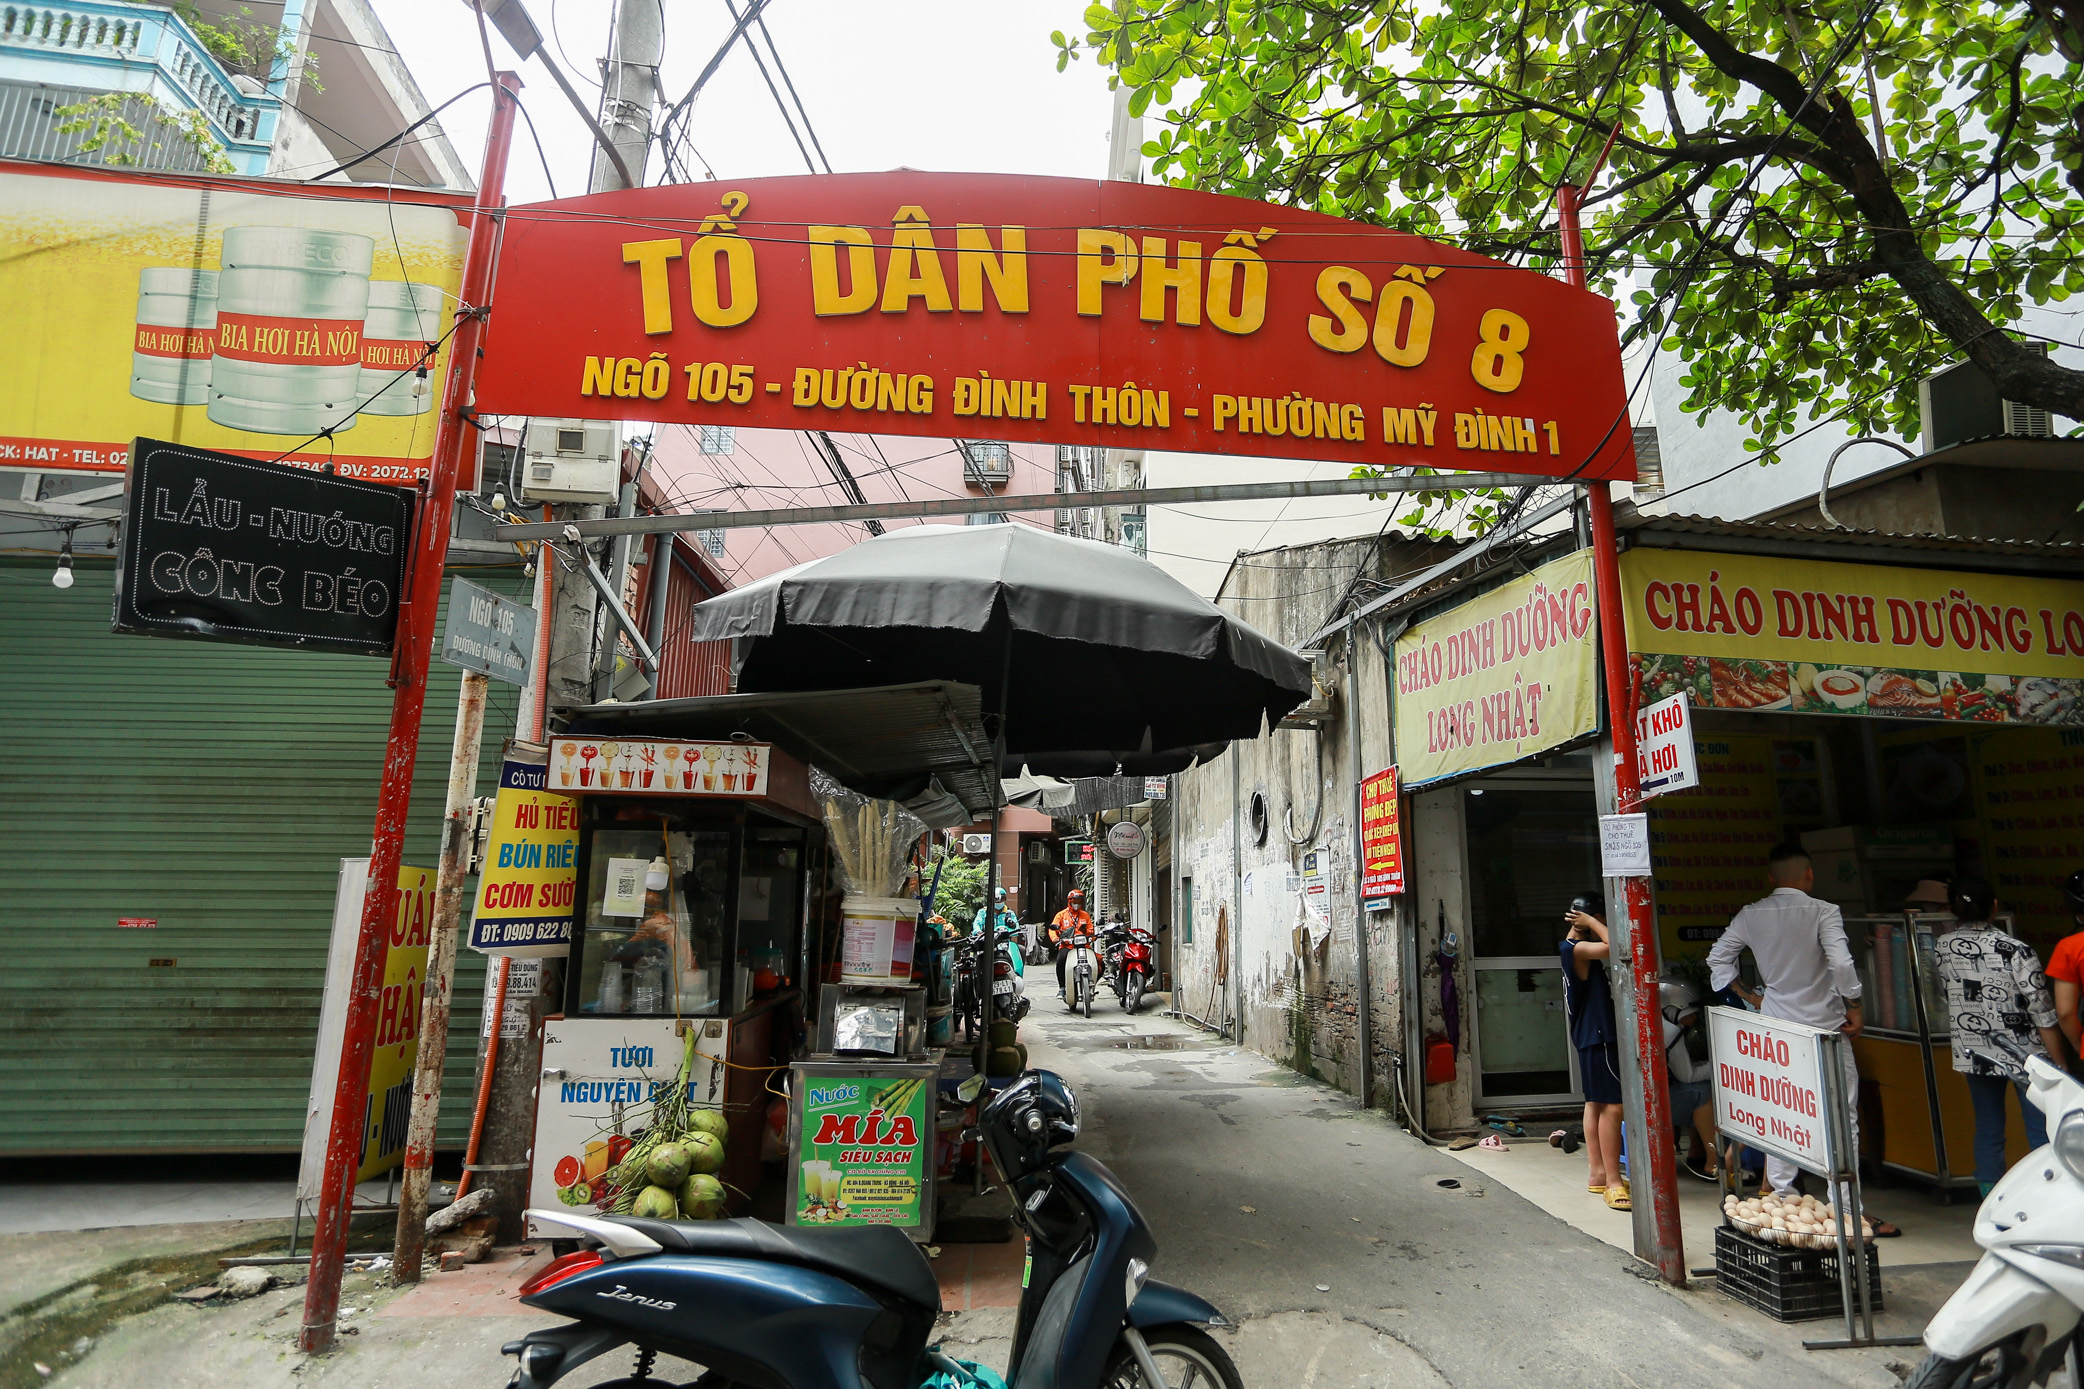 Cảnh tượng nhếch nhác, xuống cấp của 2 tuyến phố kiểu mẫu ở Hà Nội sau 8 năm- Ảnh 4.